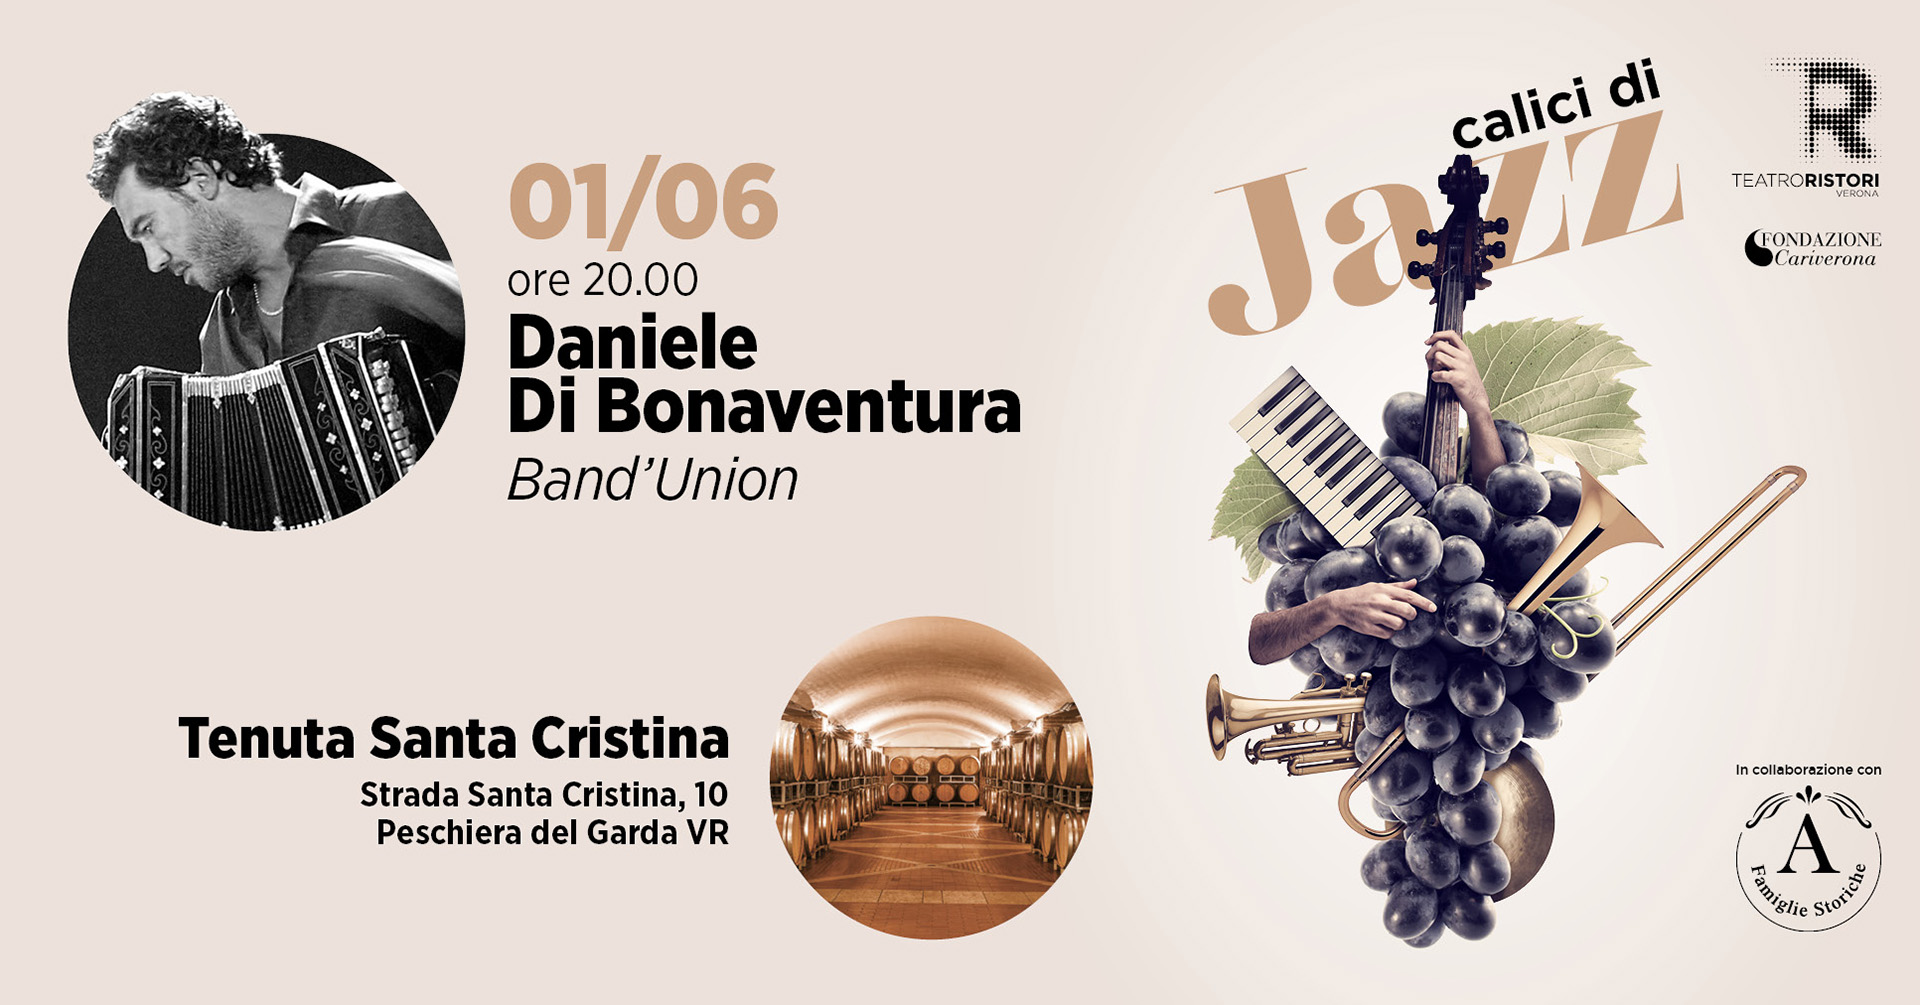 Calici di Jazz: degustazione e concerto di Daniele Di Bonaventura nella Tenuta Santa Cristina - EventiFVG.it